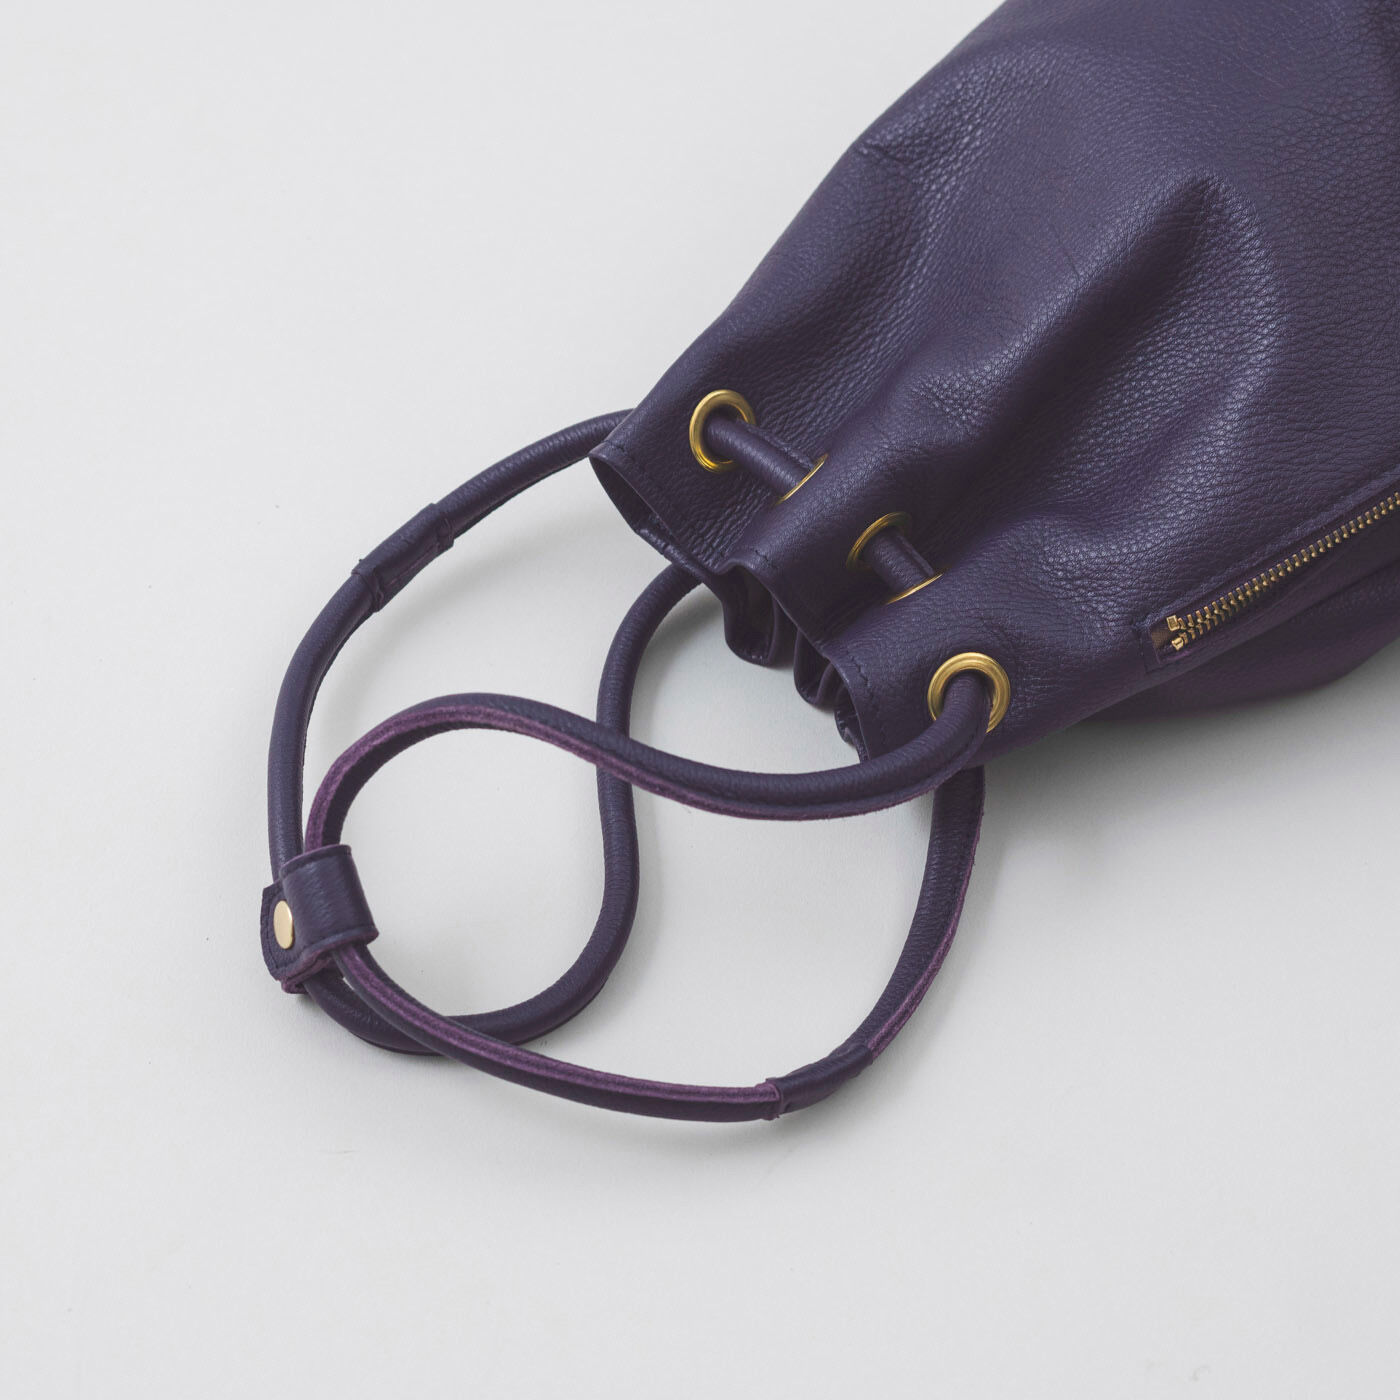 ＆Stories|福岡の鞄作家が作った 職人本革の巾着バッグ〈葡萄色〉|ショルダーストラップには留め具付き。短くしたときに長さを固定できます。